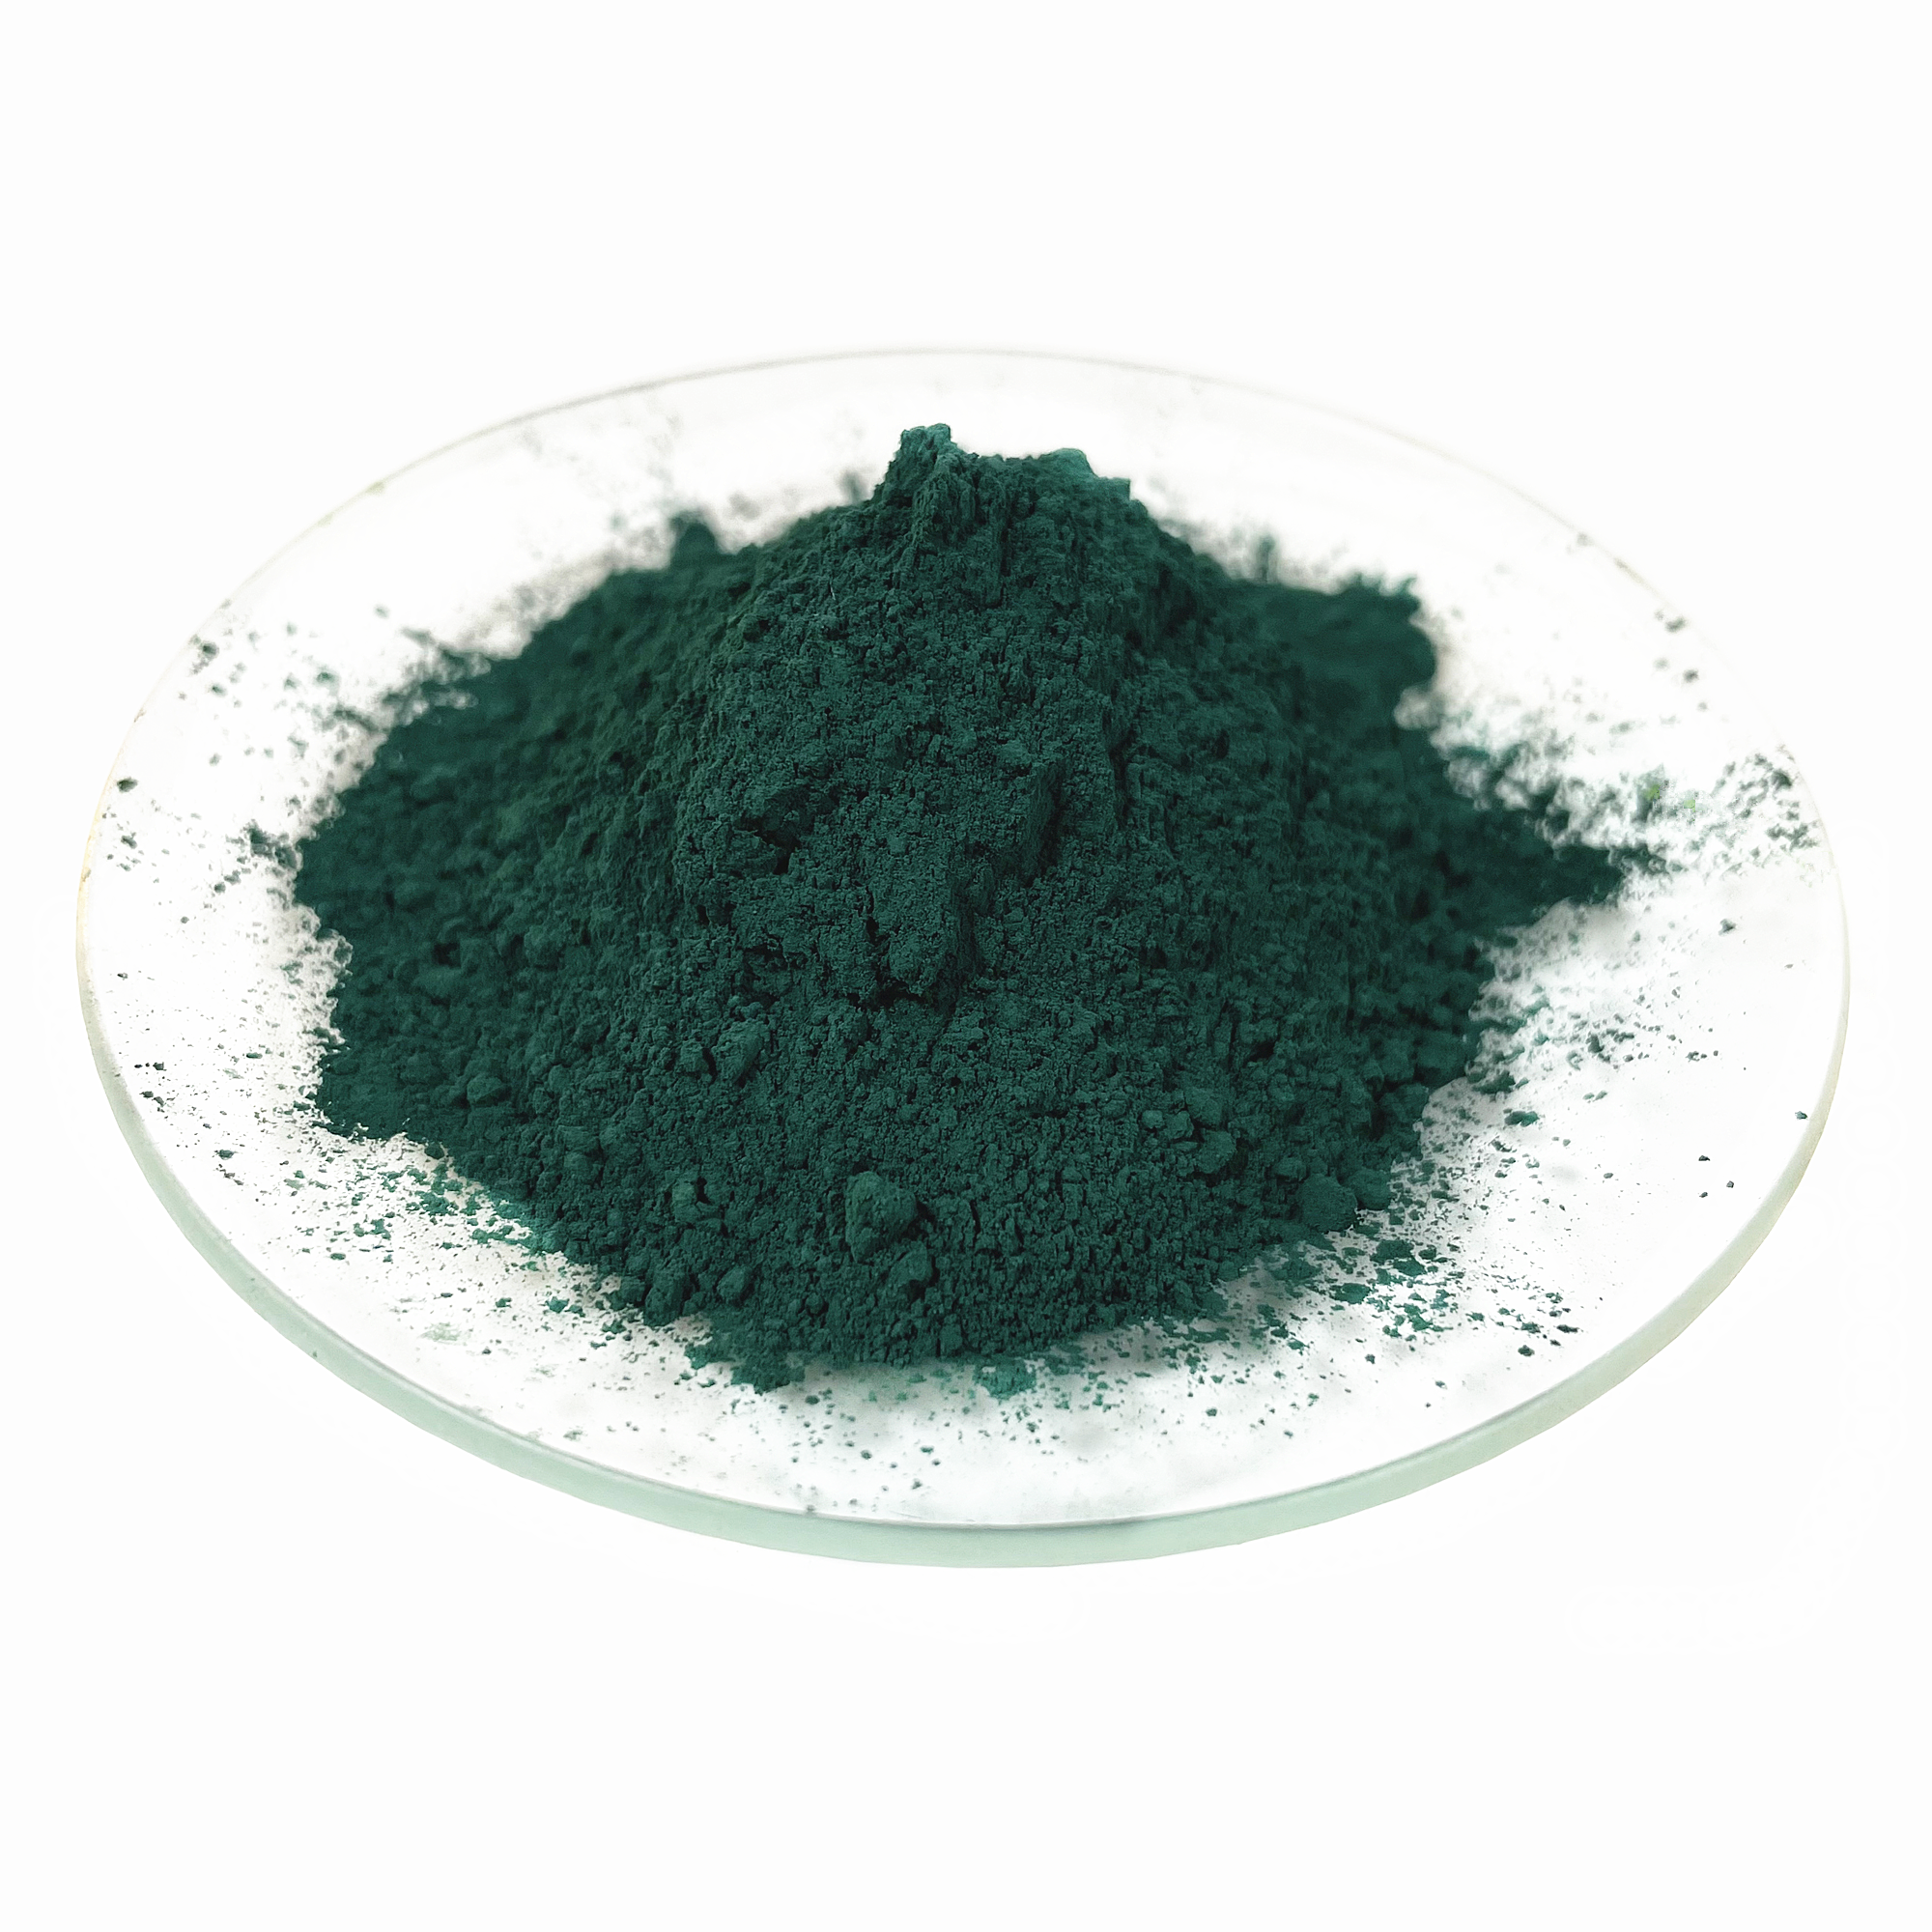 ผงเม็ดสีอนินทรีย์สีเขียวออกไซด์ของเหล็กสำหรับอิฐซีเมนต์คอนกรีต